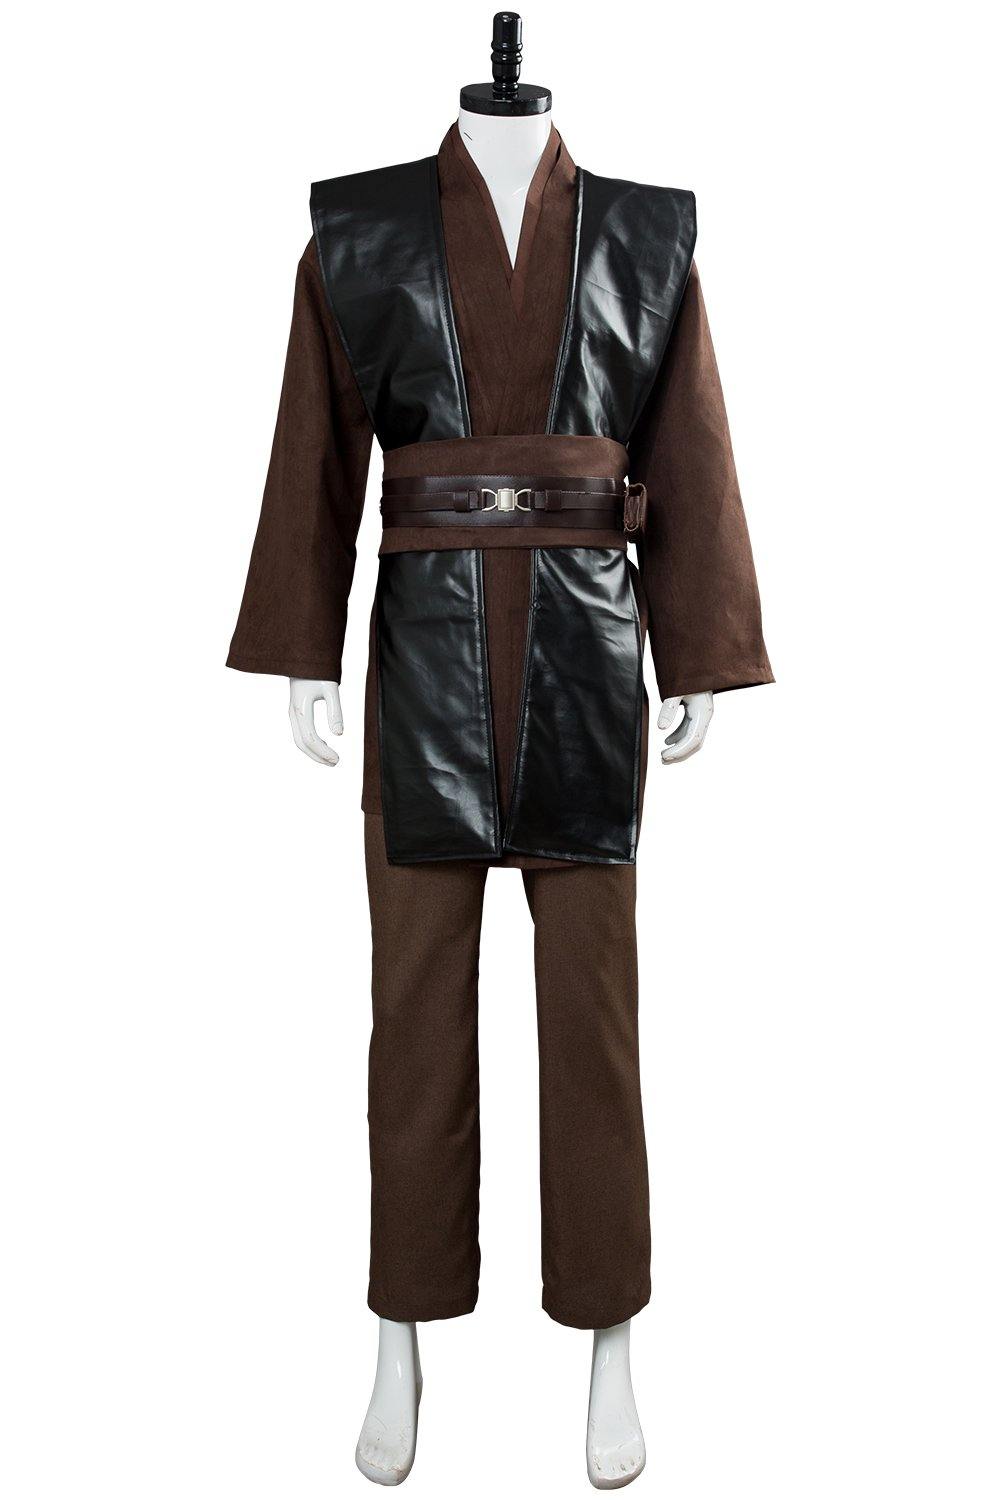 Star Wars Anakin Skywalker Darth Vader Kostüm Cosplay Kostüm Set - cosplaycartde